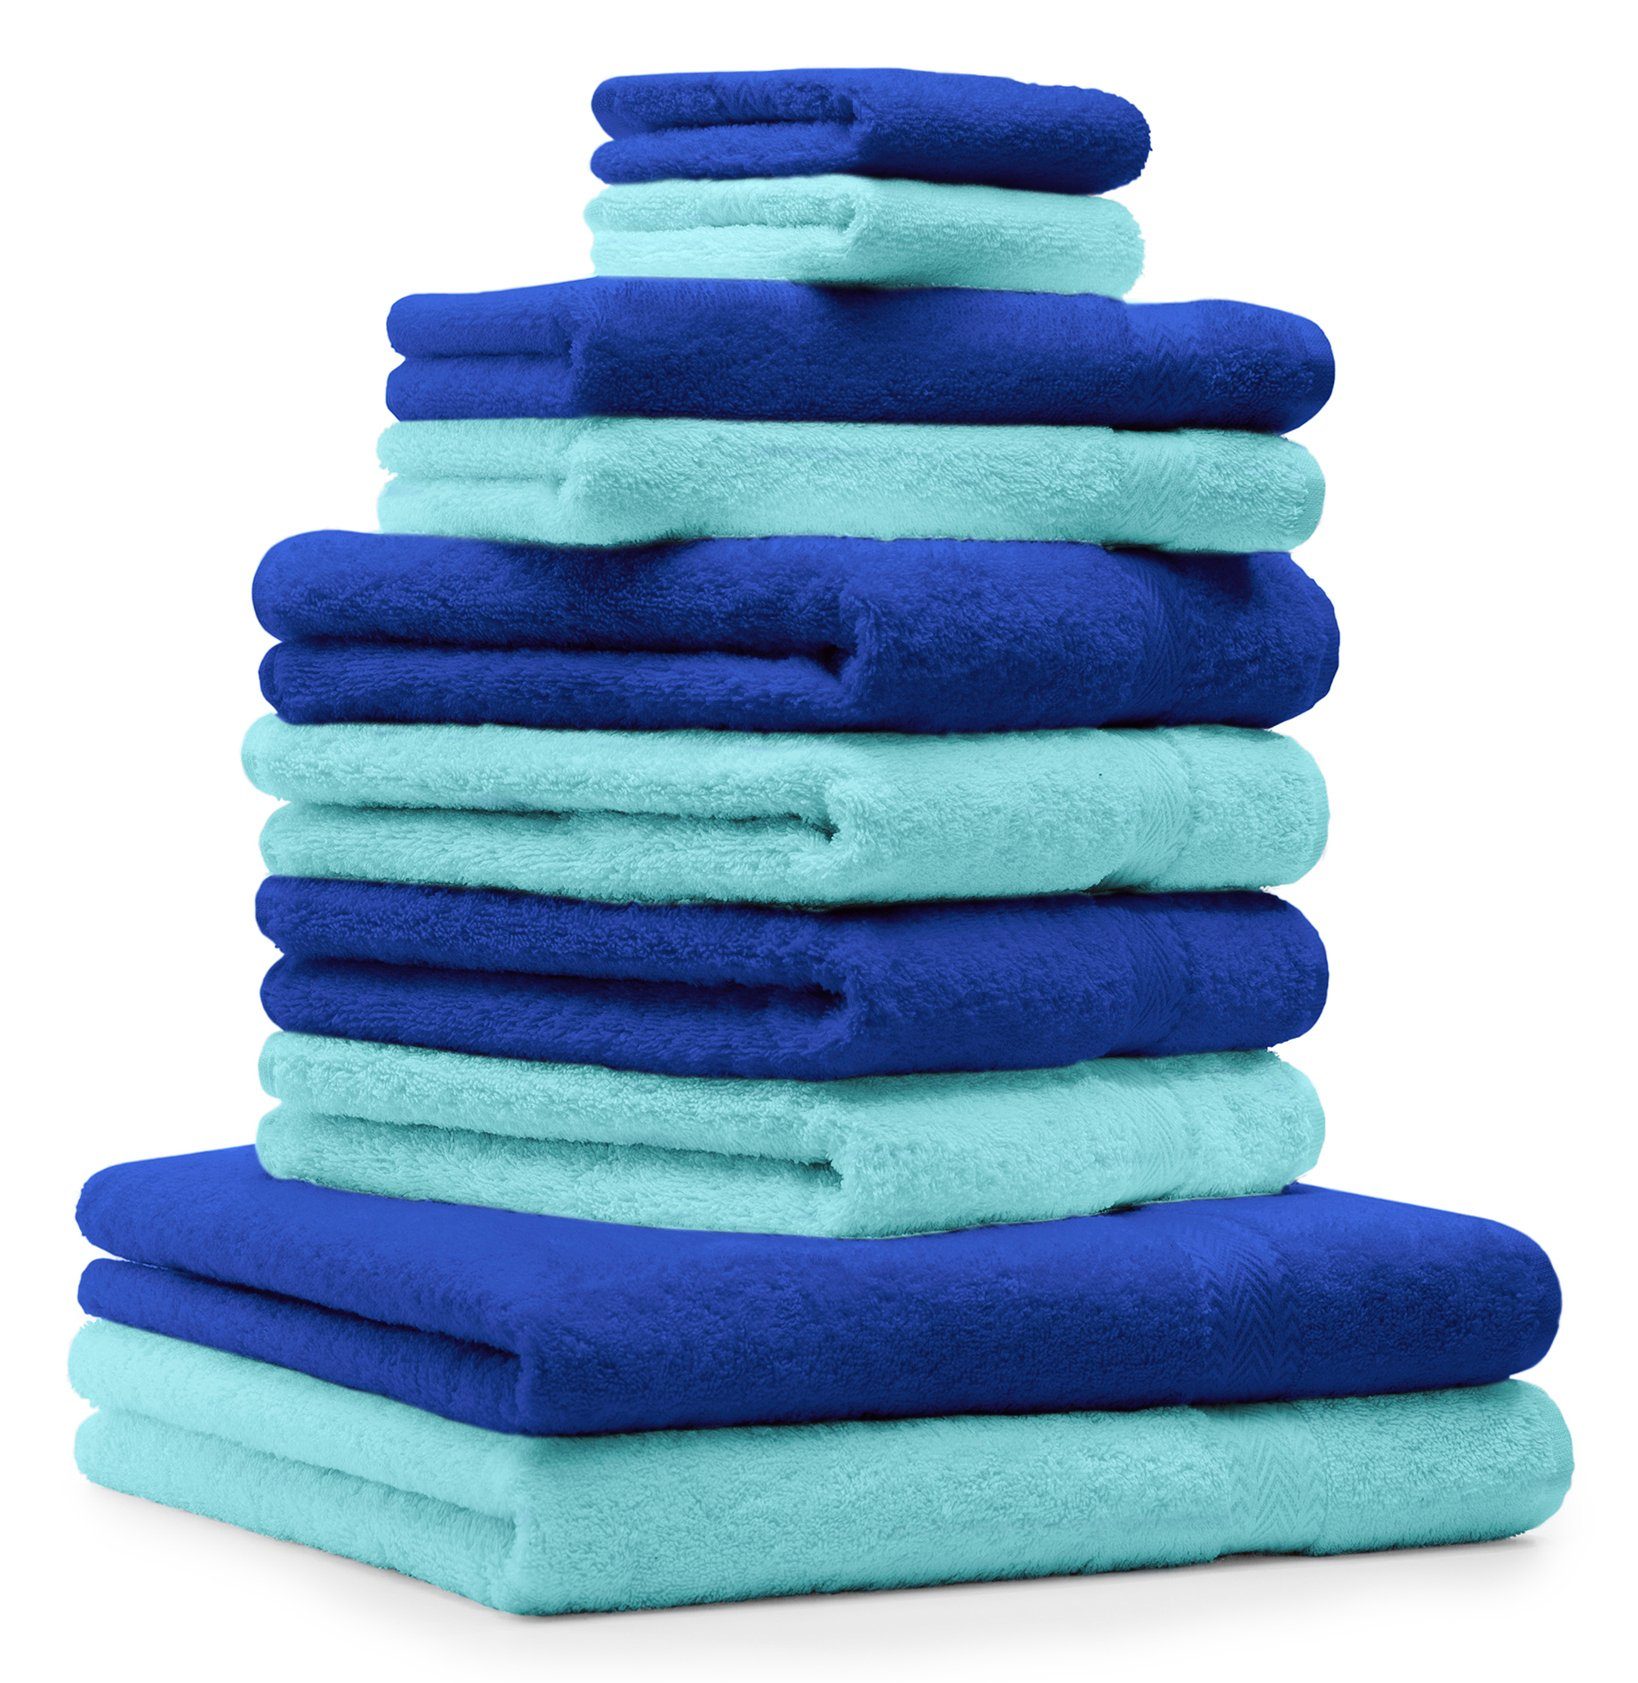 Betz Handtuch Set 10-TLG. Handtuch-Set Premium Farbe Royalblau & Türkis, 100% Baumwolle